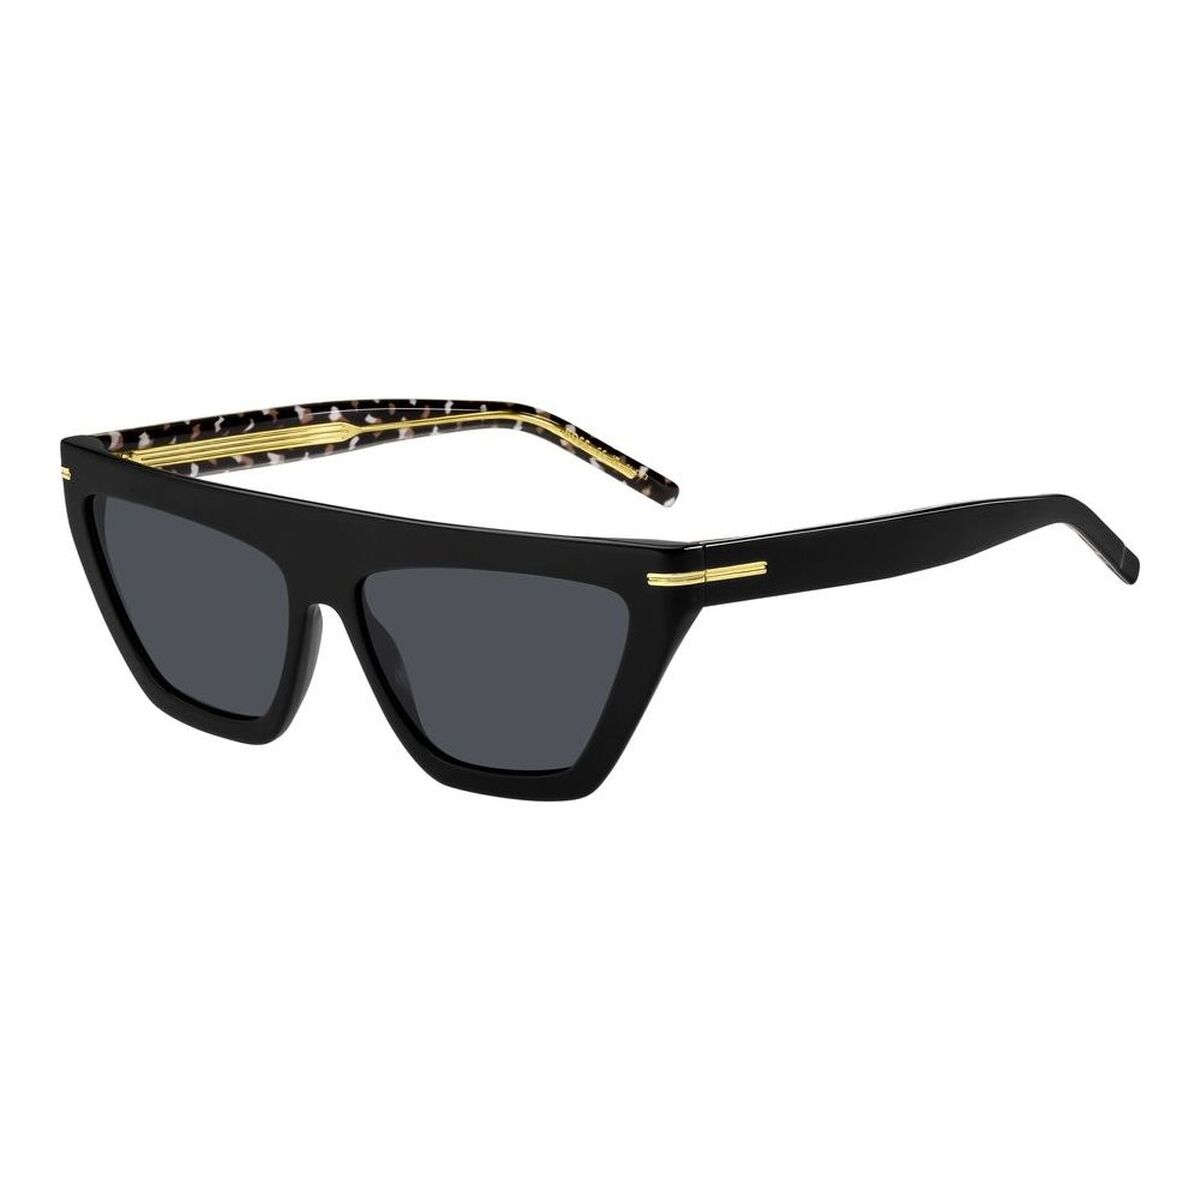 Kaufe Damensonnenbrille Hugo Boss BOSS 1609_S bei AWK Flagship um € 242.00